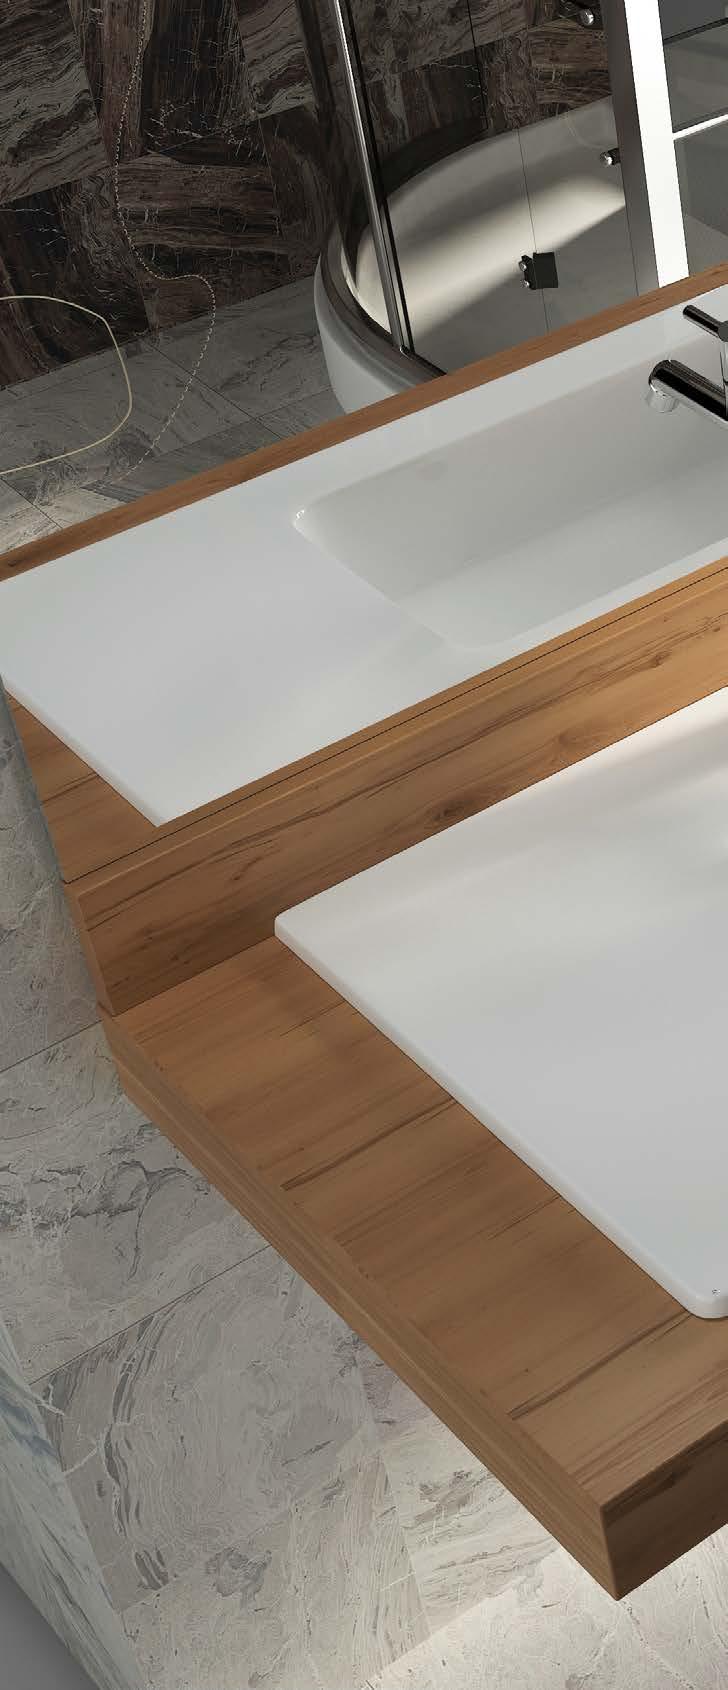 158 SERAMİK ÜRÜNLER ARCHISOL AKILLI ÇÖZÜMLER Archisol serisi farklı incelik ve tasarımlardaki lavabo ve asma klozet alternatifleriyle banyolardaki uyumu